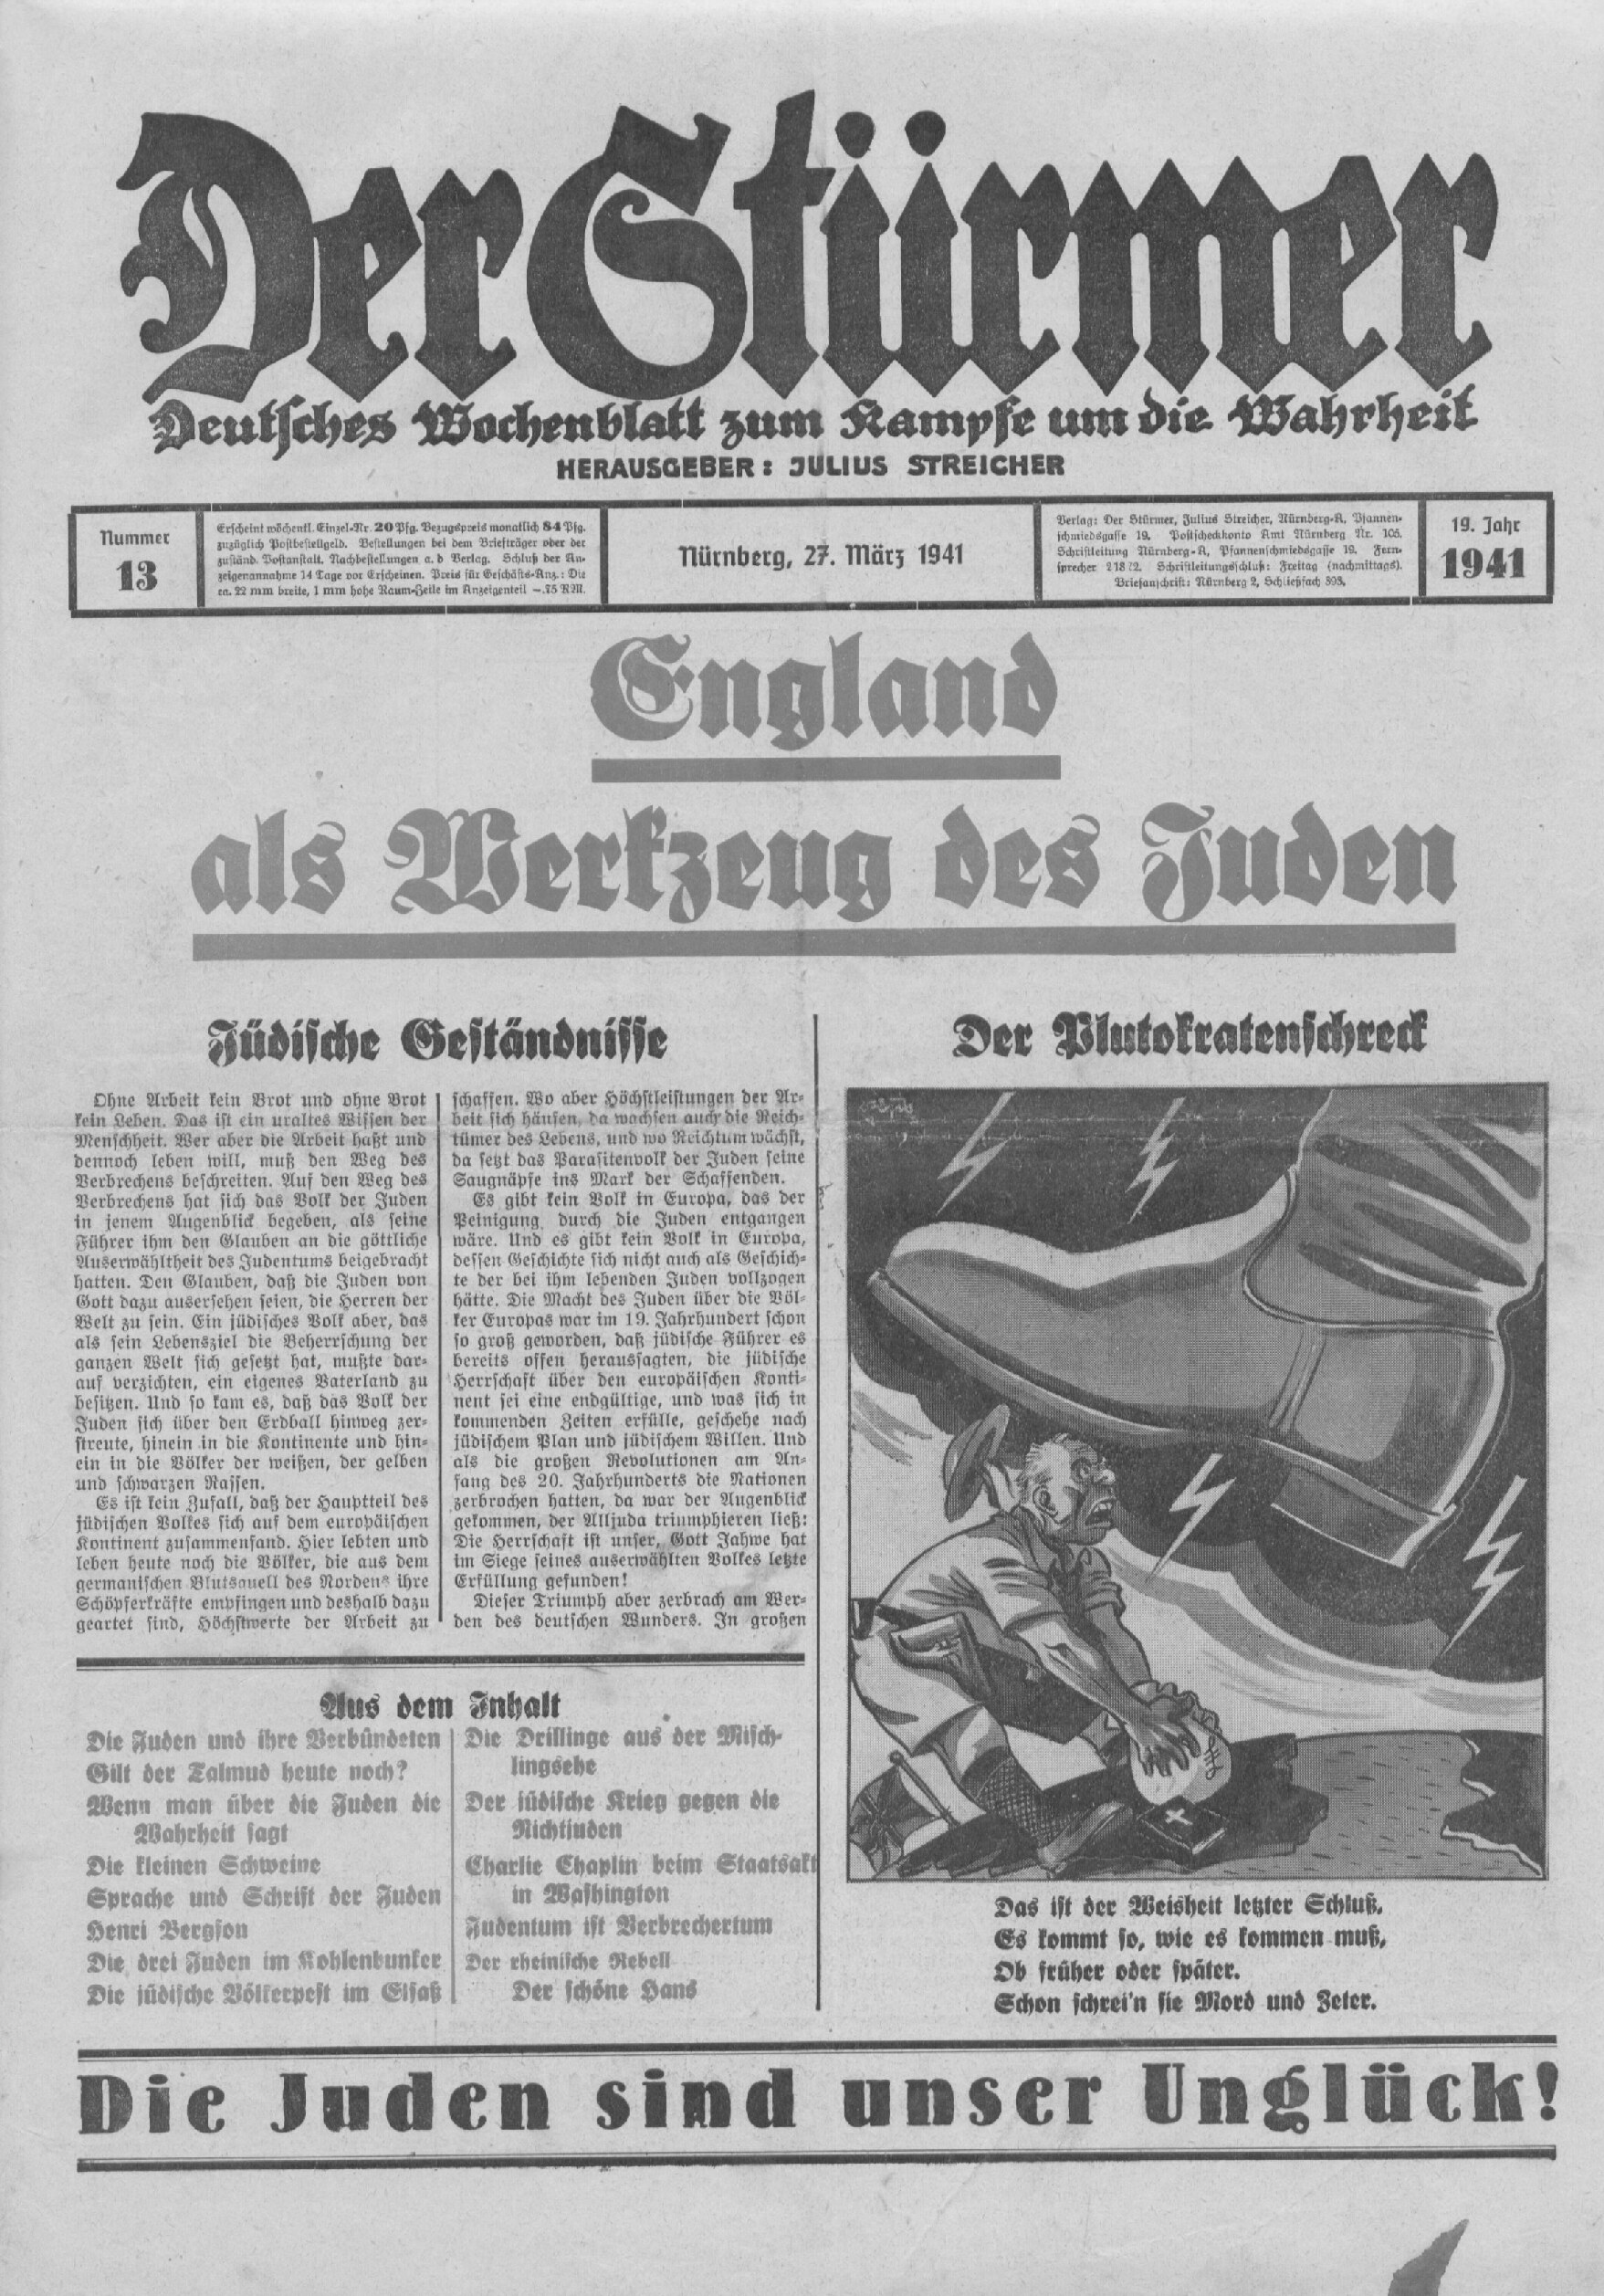 Der Stürmer - 1941 Nr. 13 - England als Werkzeug des Juden